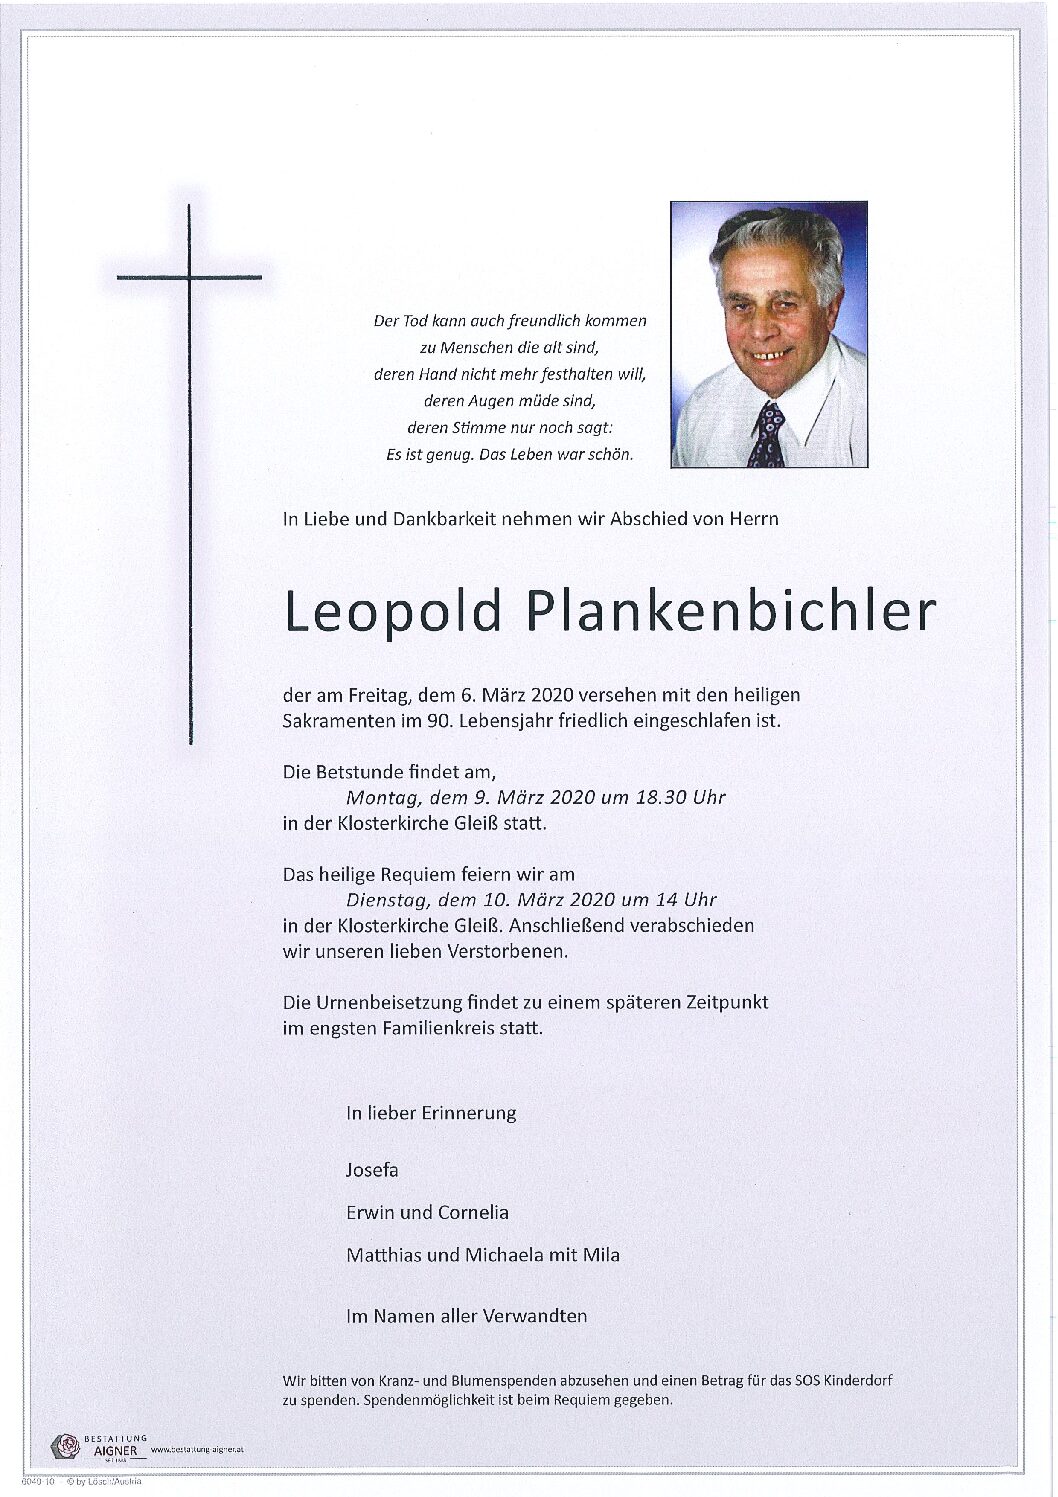 Leopold Plankenbichler